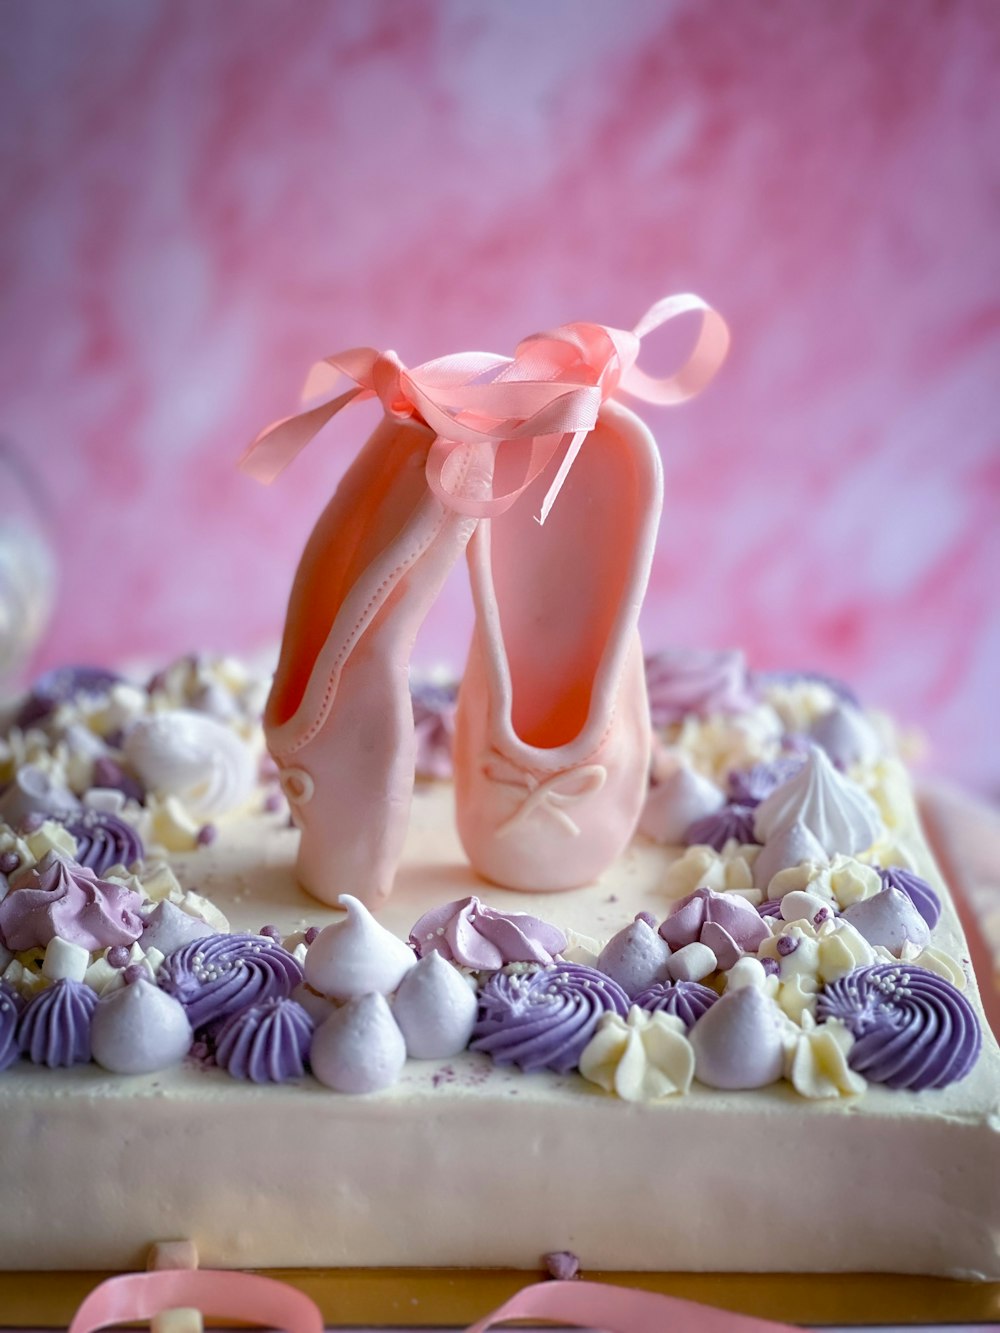 バレエシューズと貝殻で飾られたケーキ